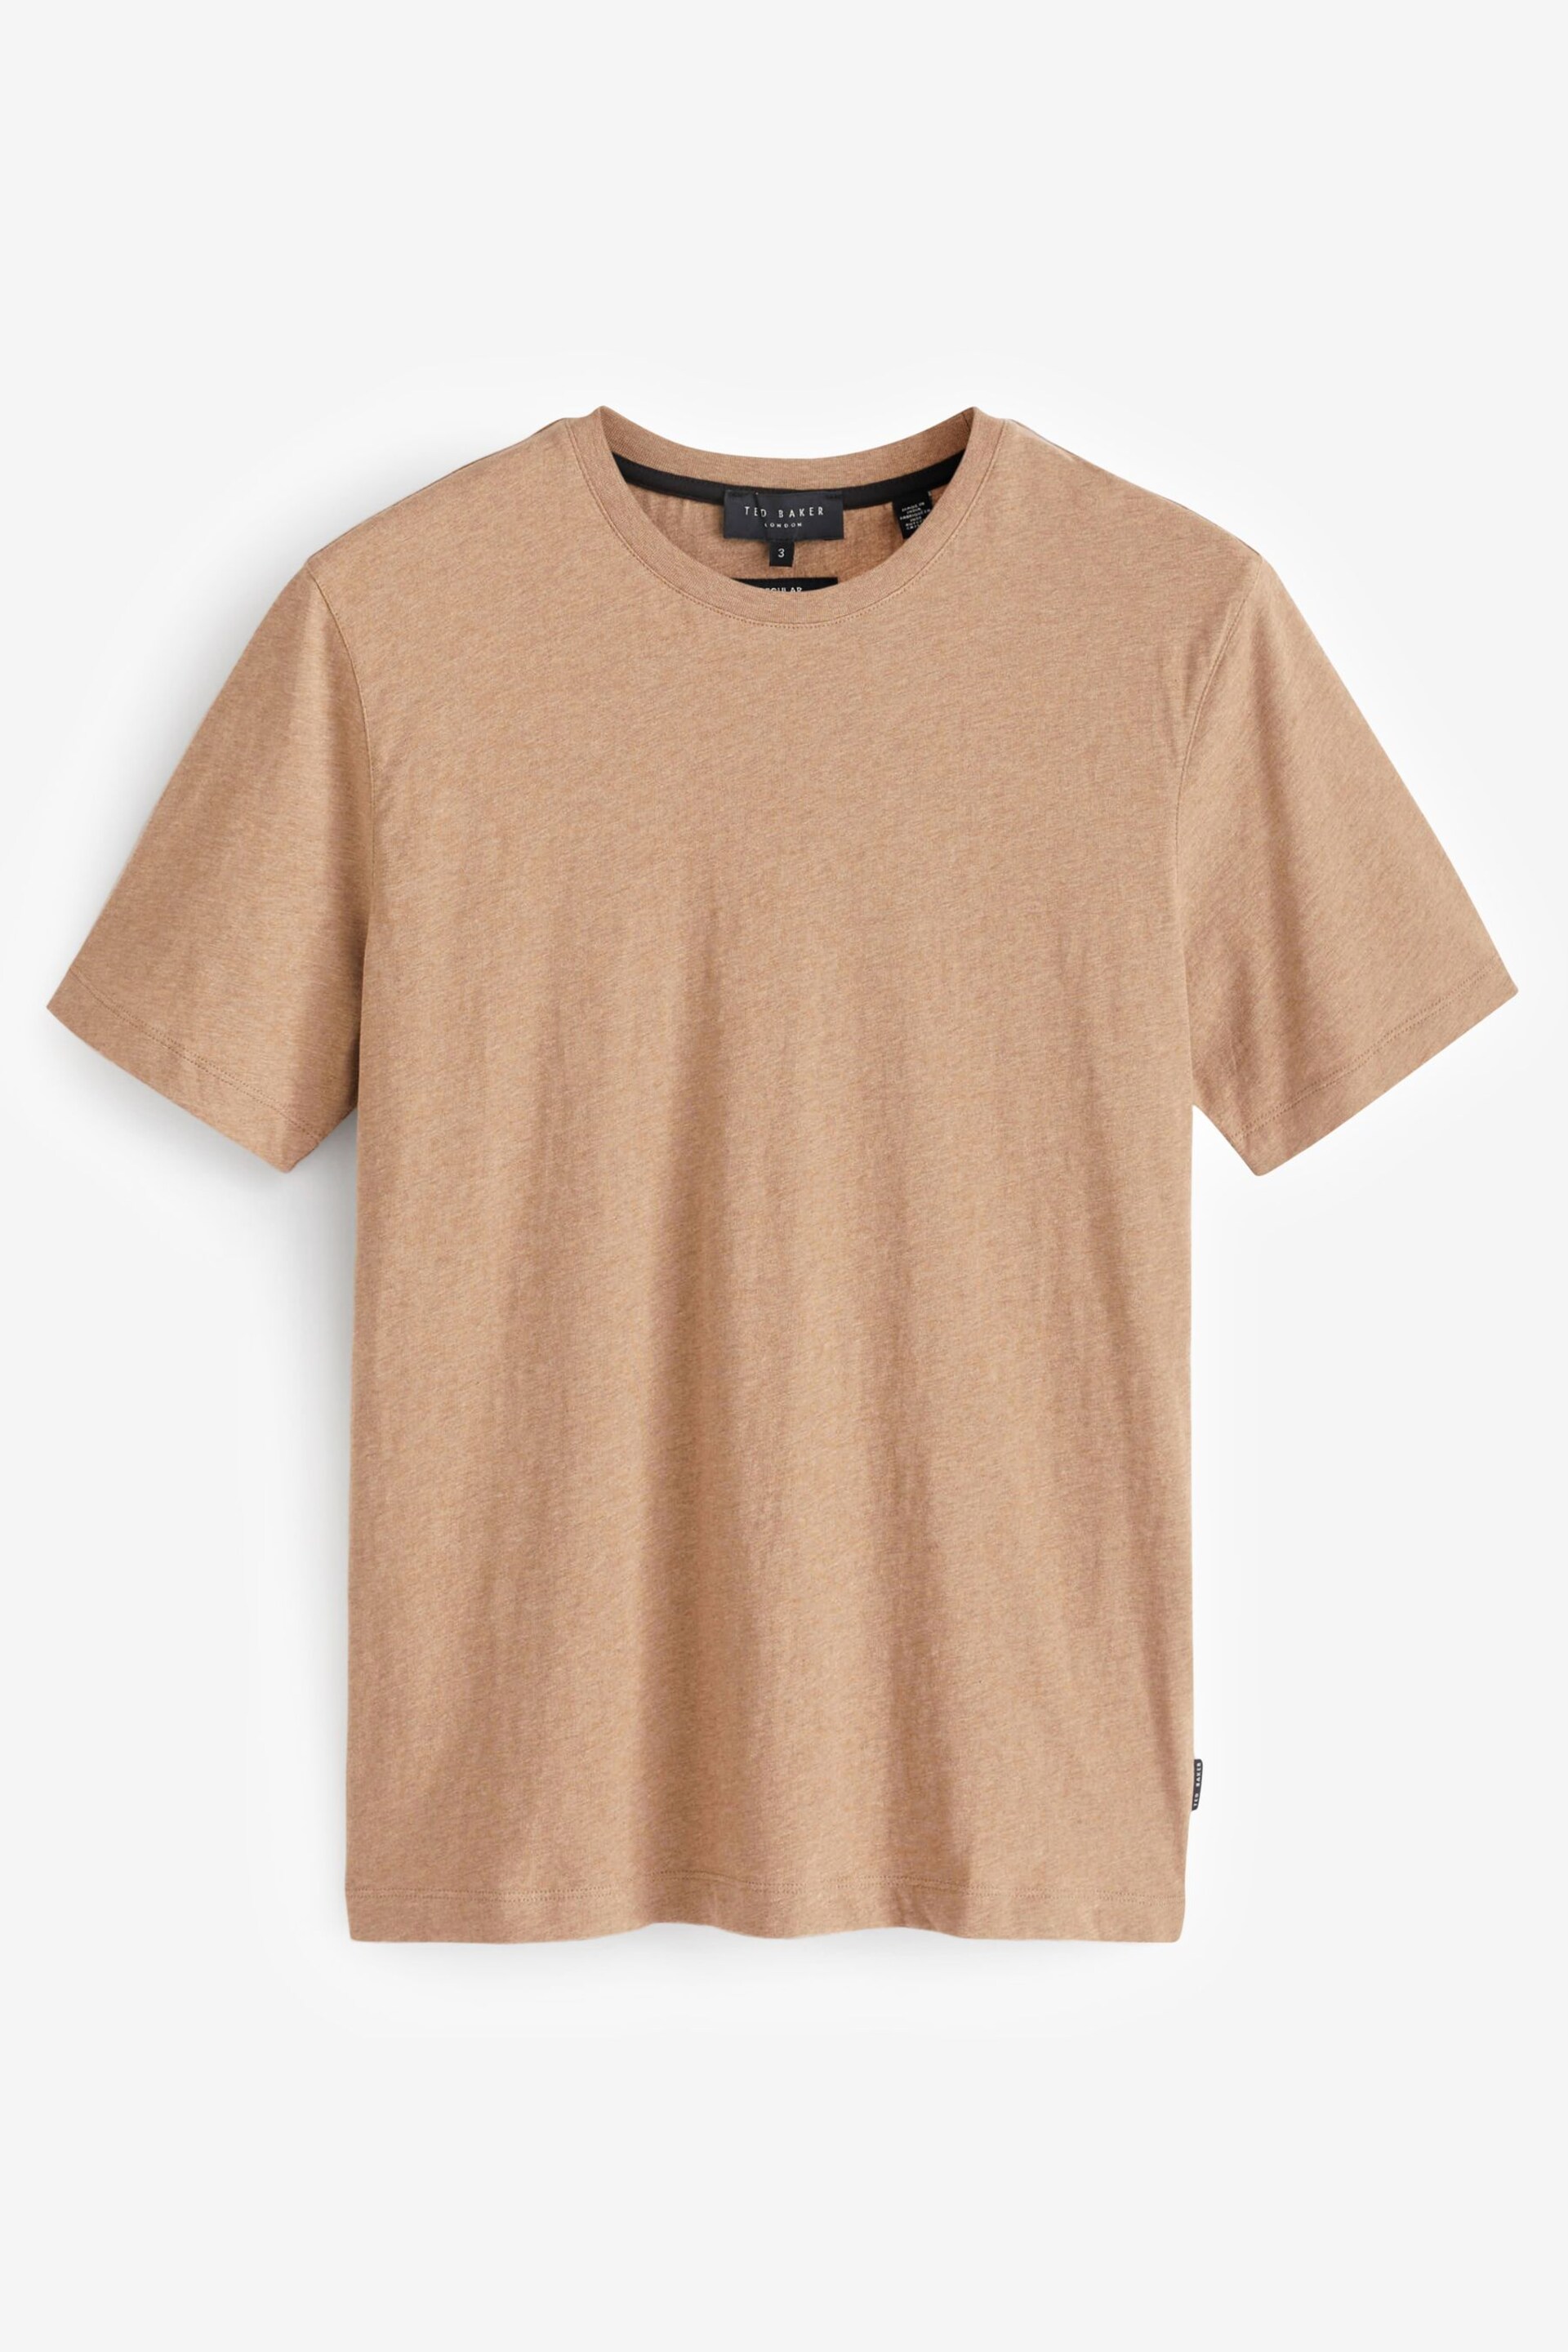 Ted Baker Brown Tywinn Regular Plain T-Shirt - Image 5 of 6